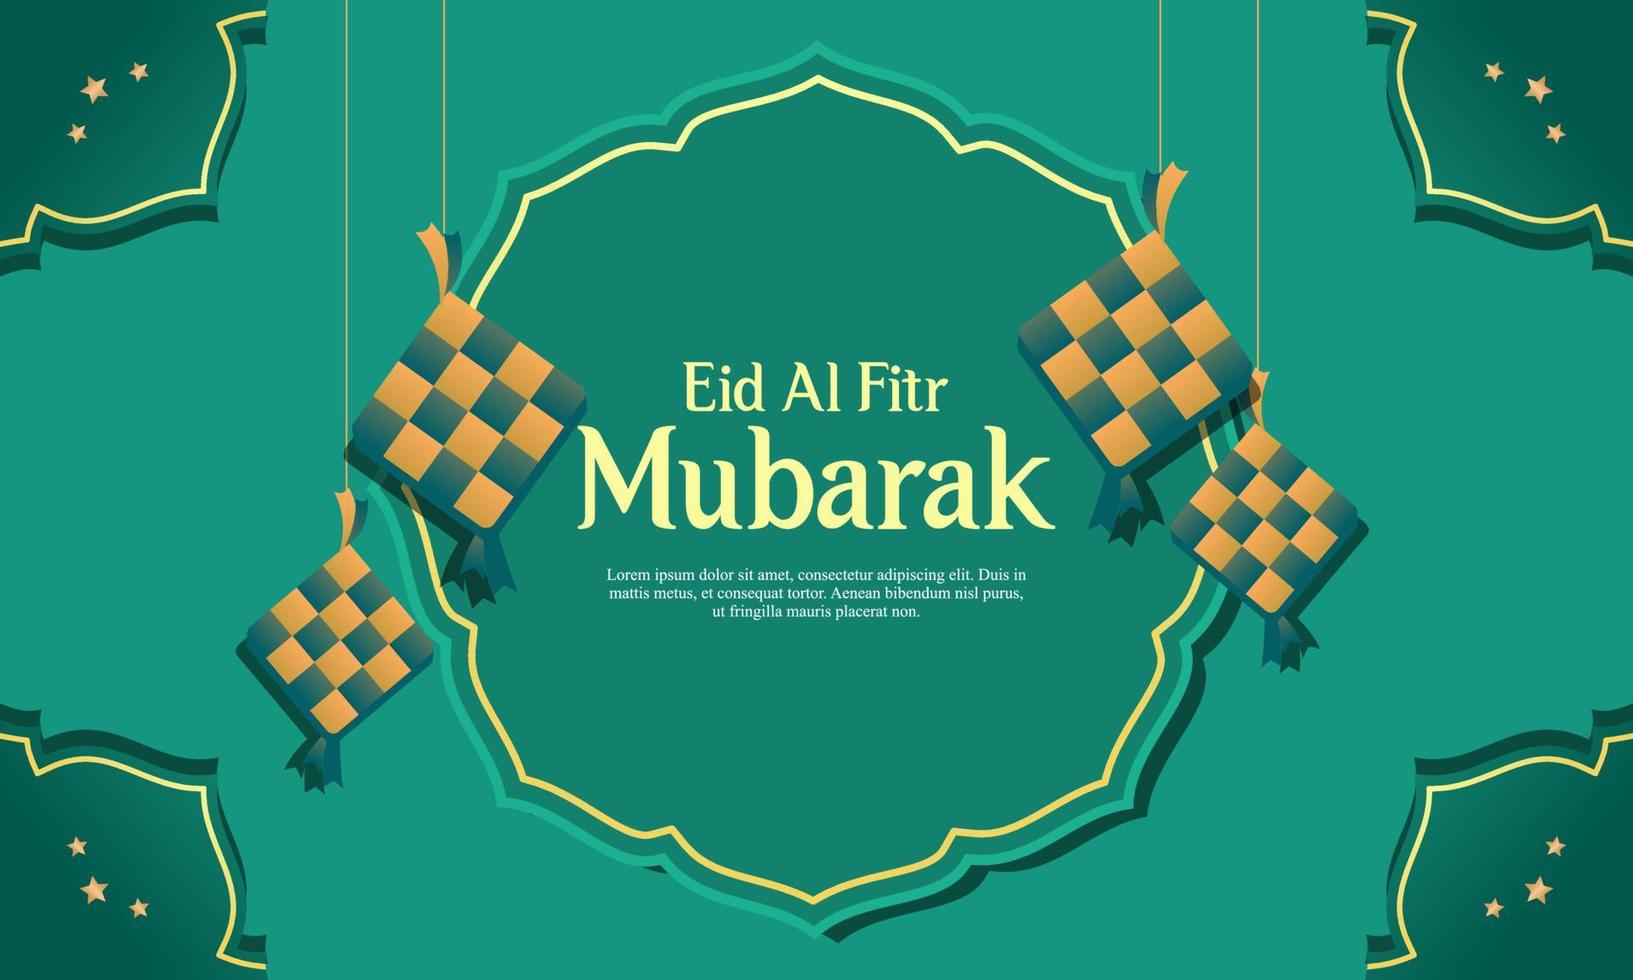 realistische grafikdesignvorlage für eid al-fitr ramadan illustration vektor